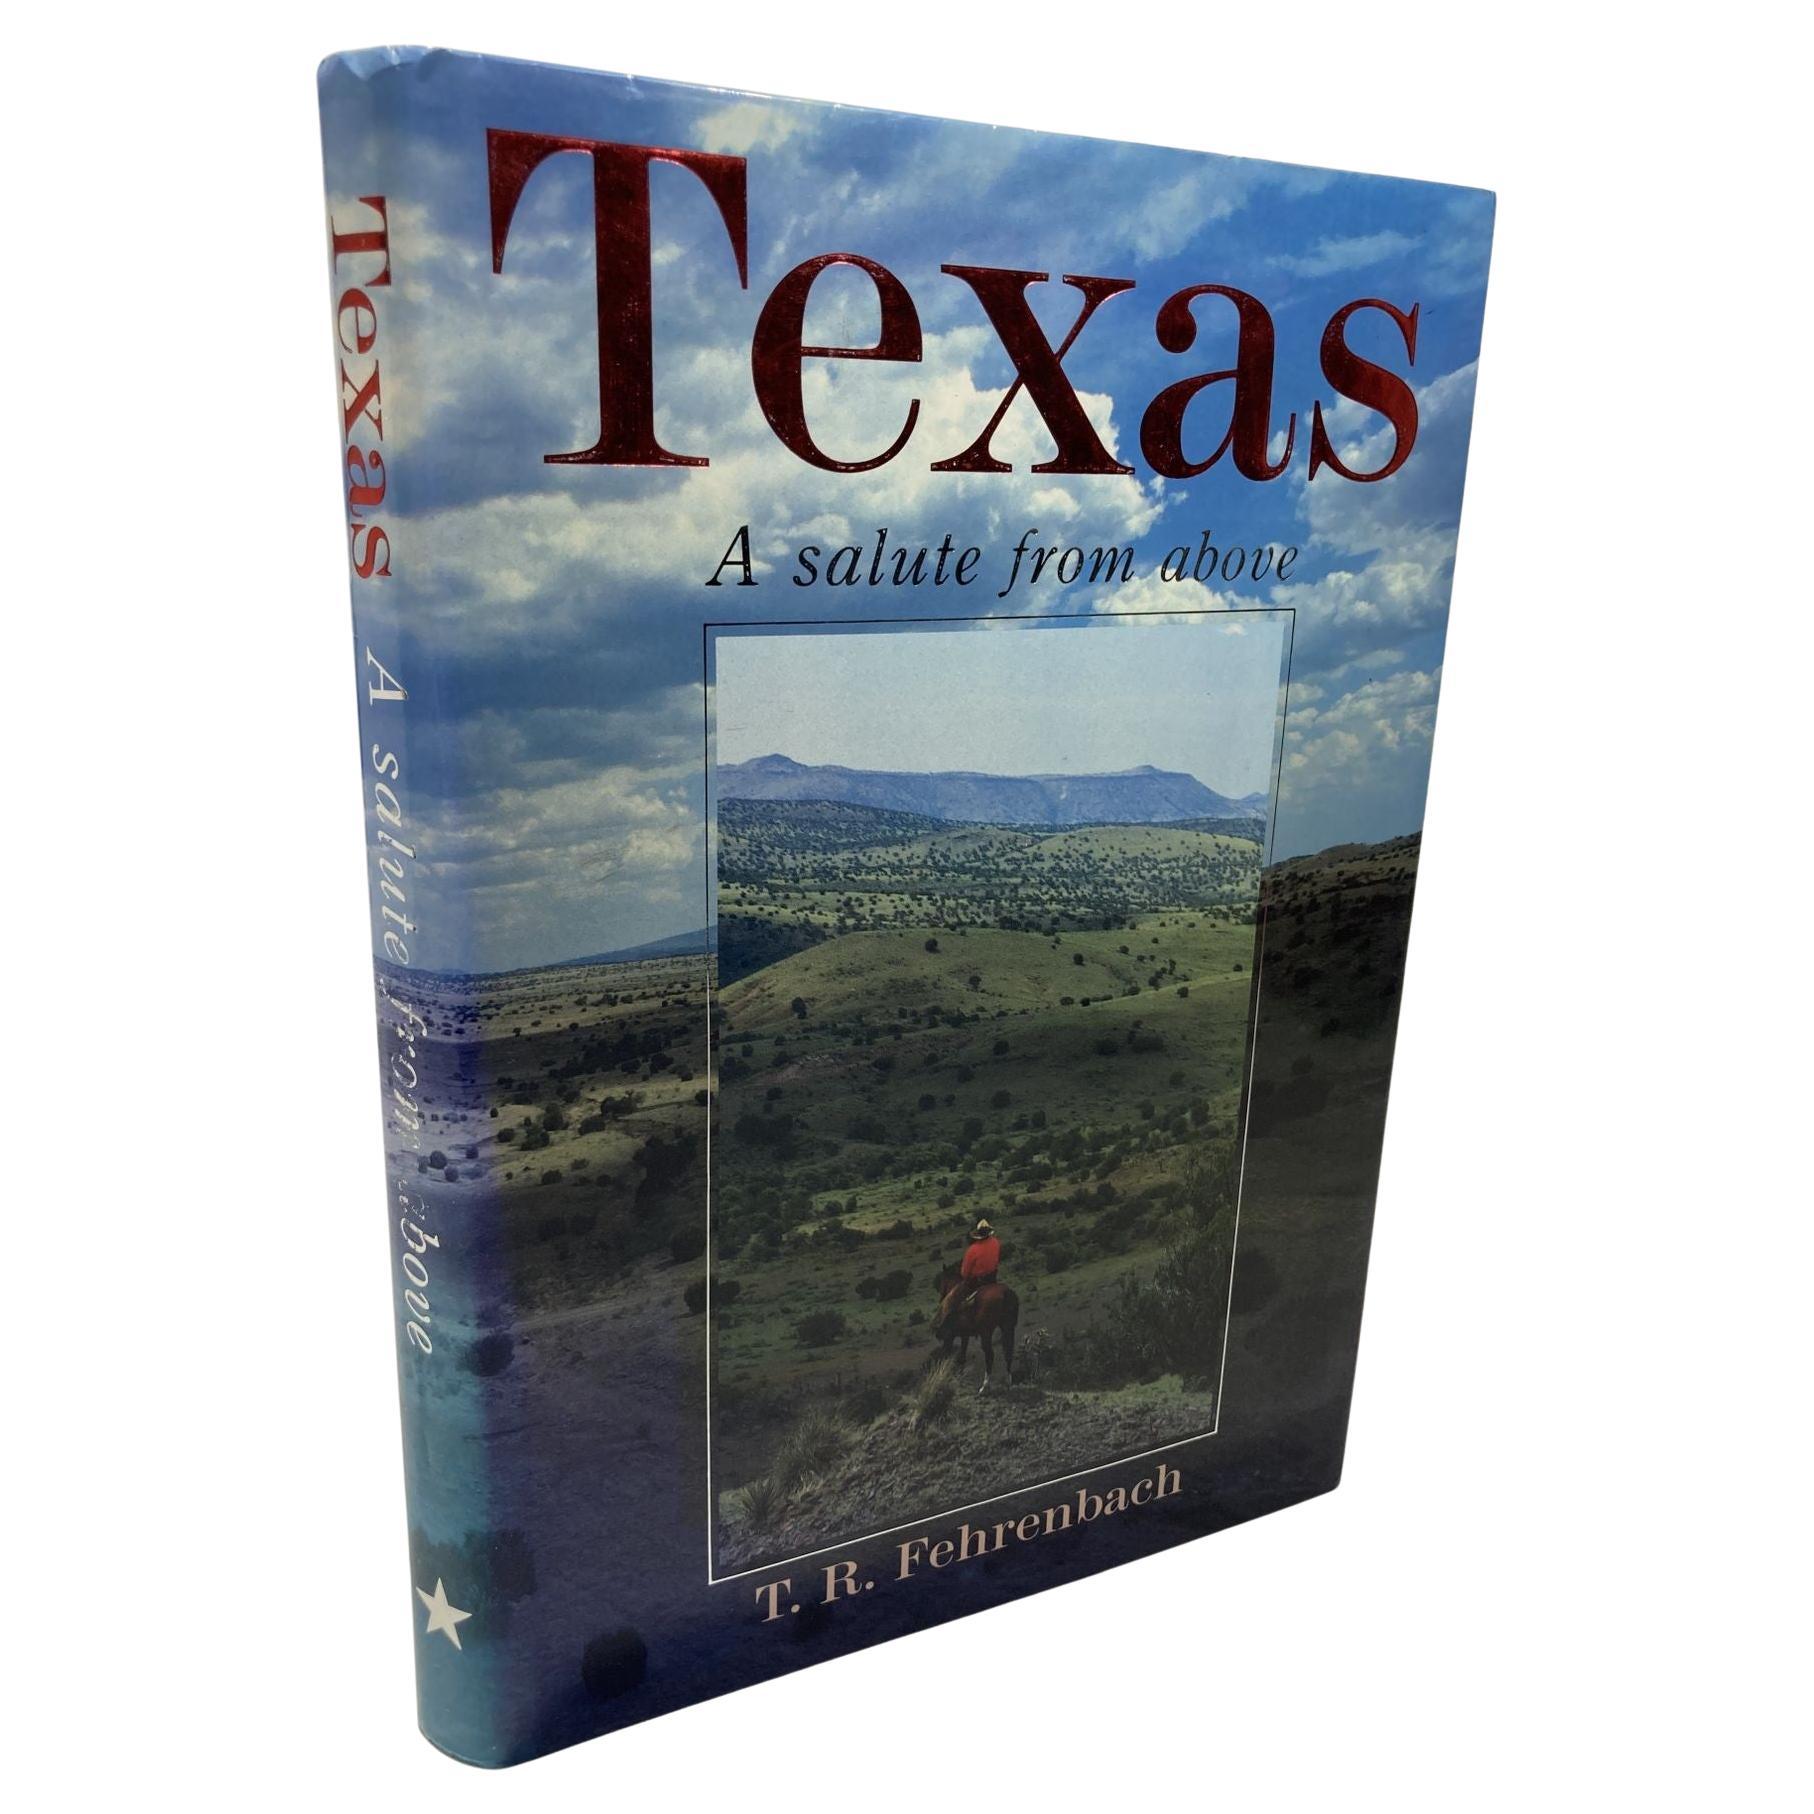 Le Texas : un salut vu d'en haut Fehrenbach, T. R 1985 en vente